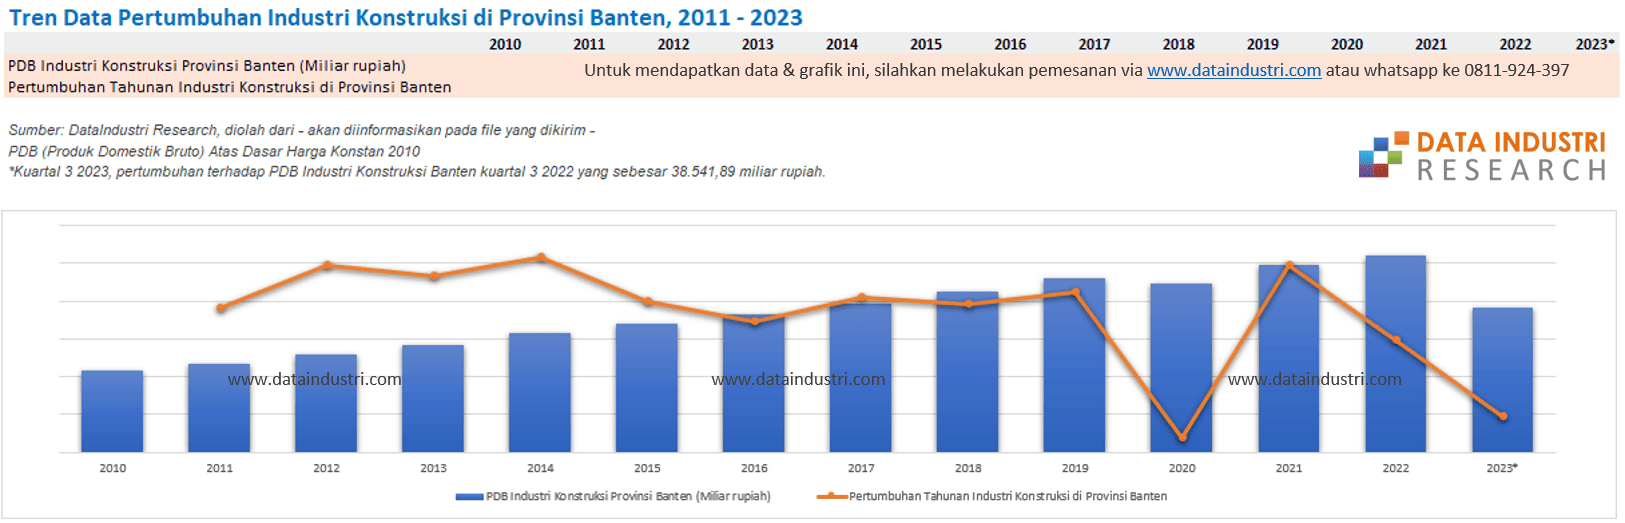 Tren Data Pertumbuhan Industri Konstruksi di Provinsi Banten, 2011 - 2023